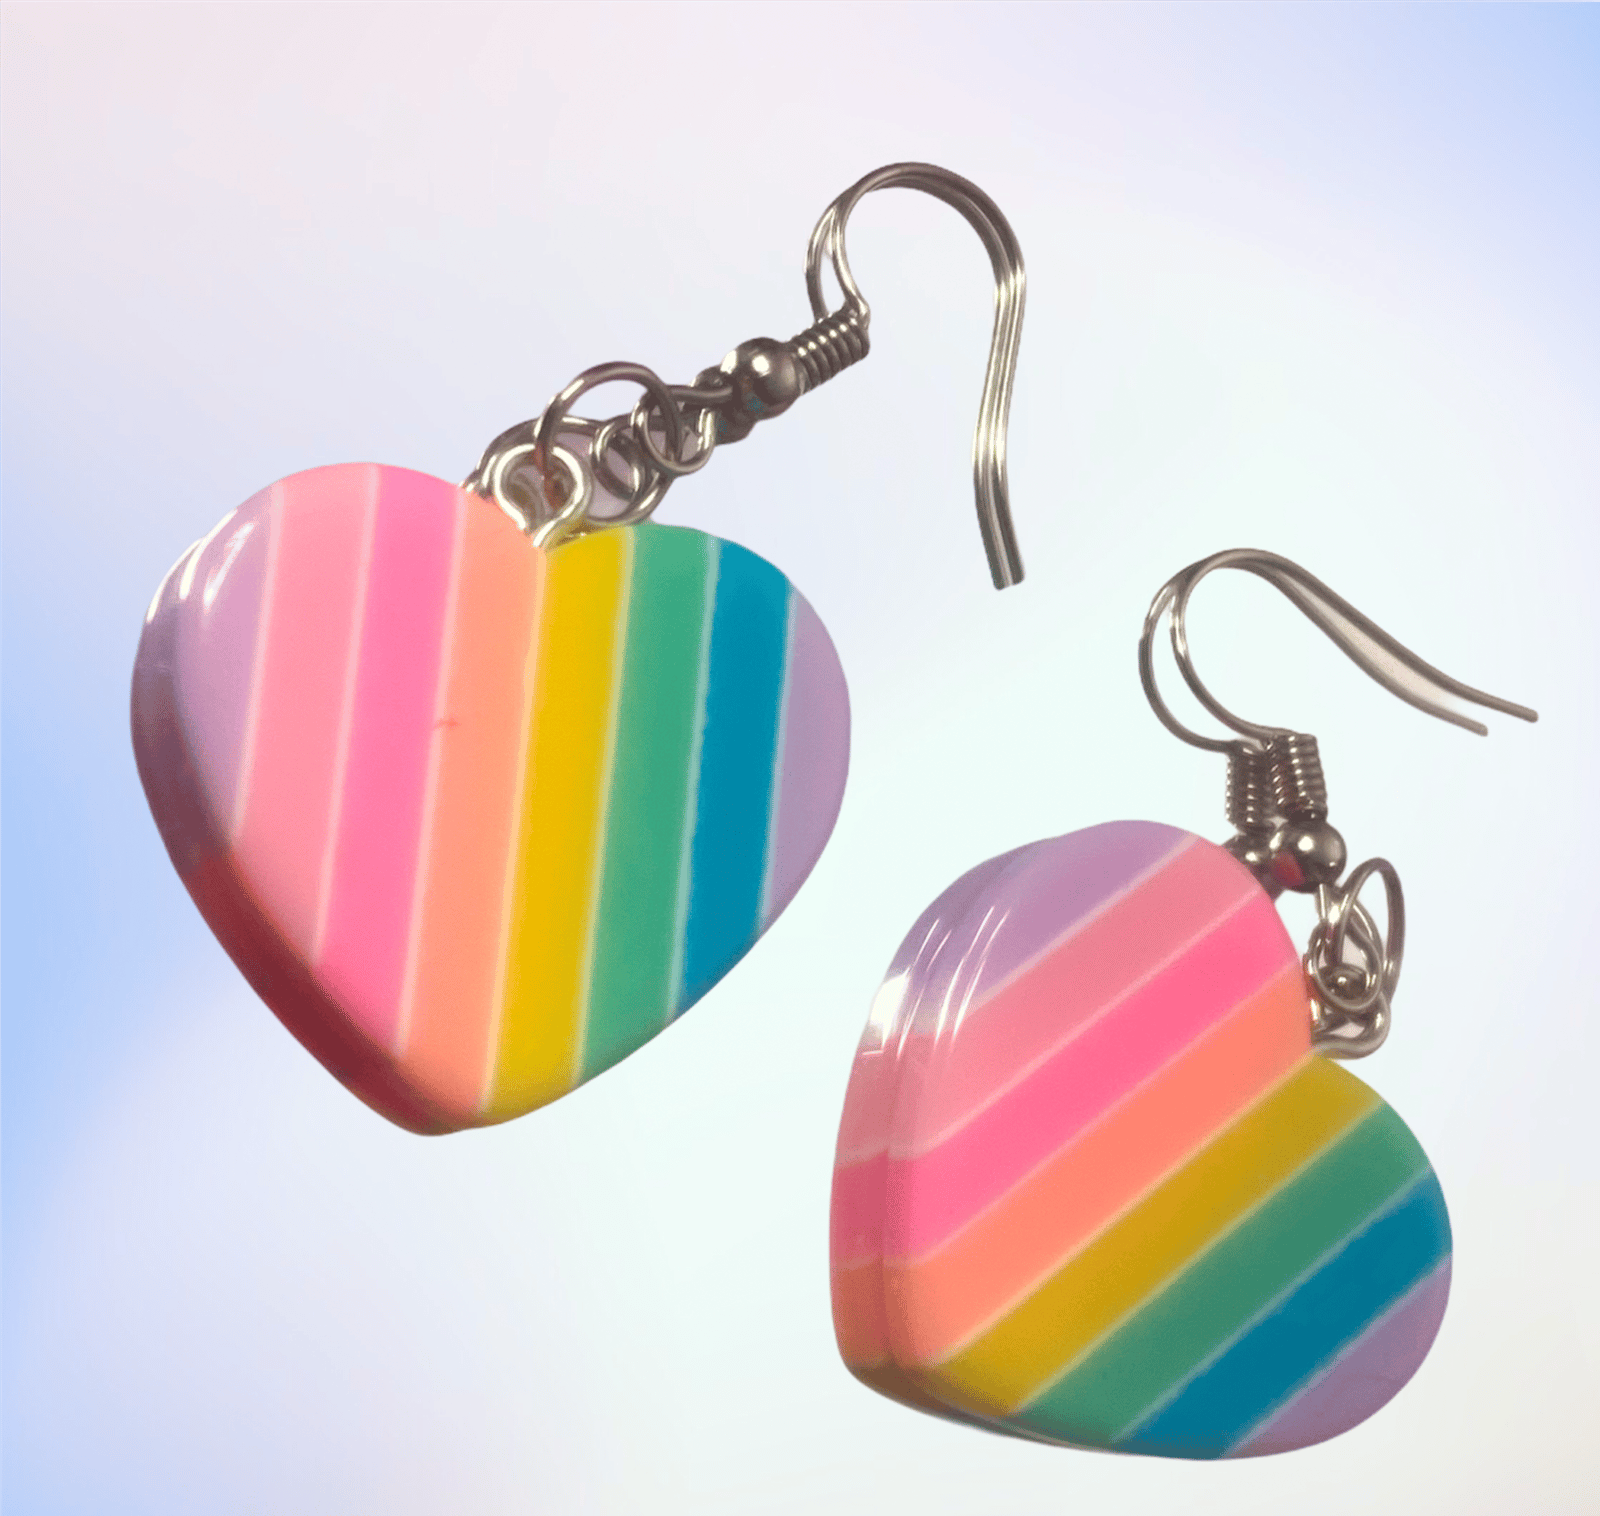 Pastel striped earrings